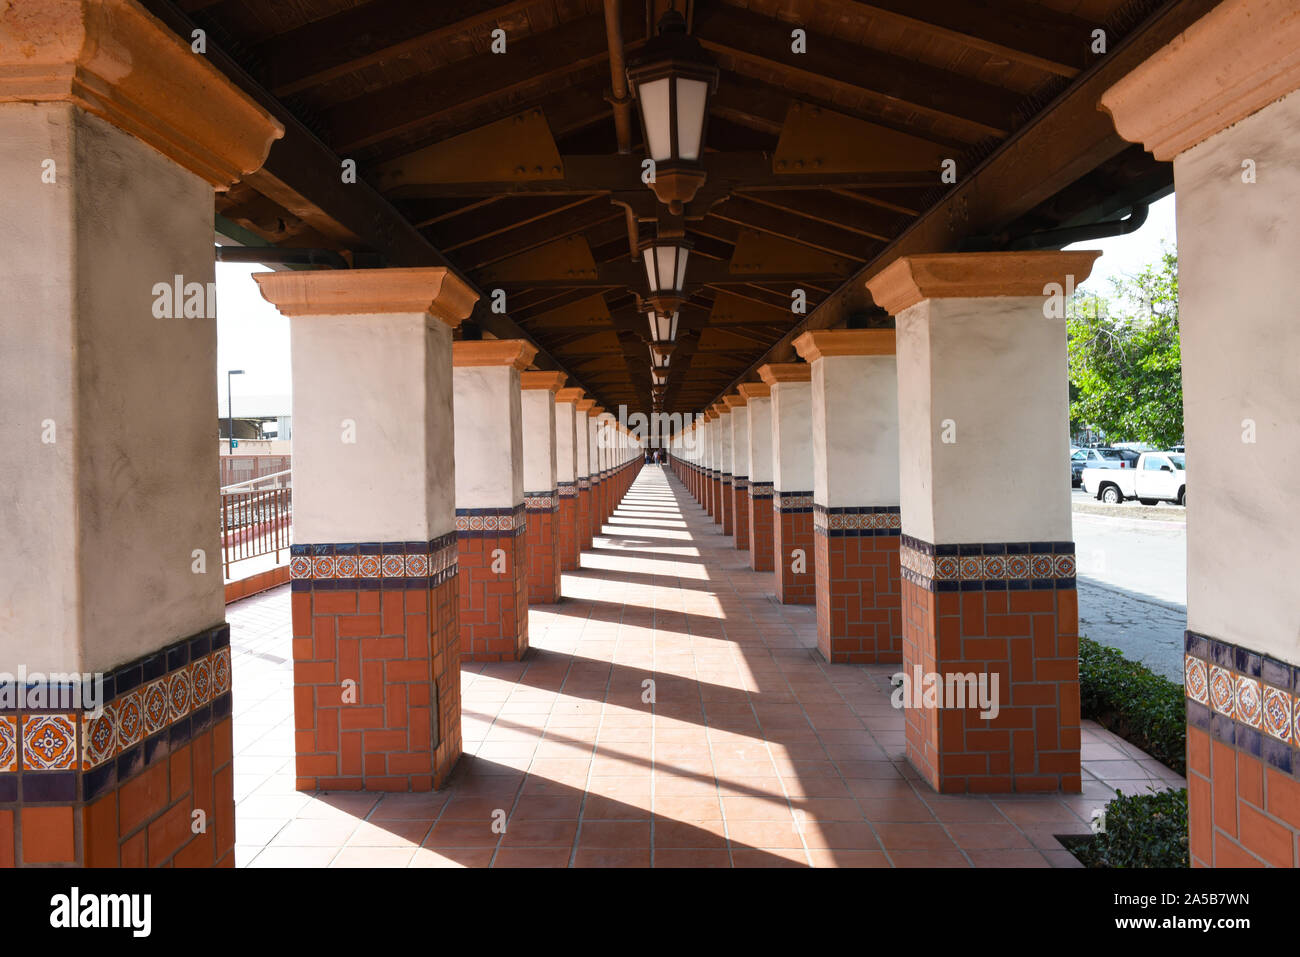 SANTA ANA, CALIFORNIA - 14 OTT 2019: passerella esterna colonnato con architettura spagnola motif presso la Santa Ana stazione ferroviaria. Foto Stock